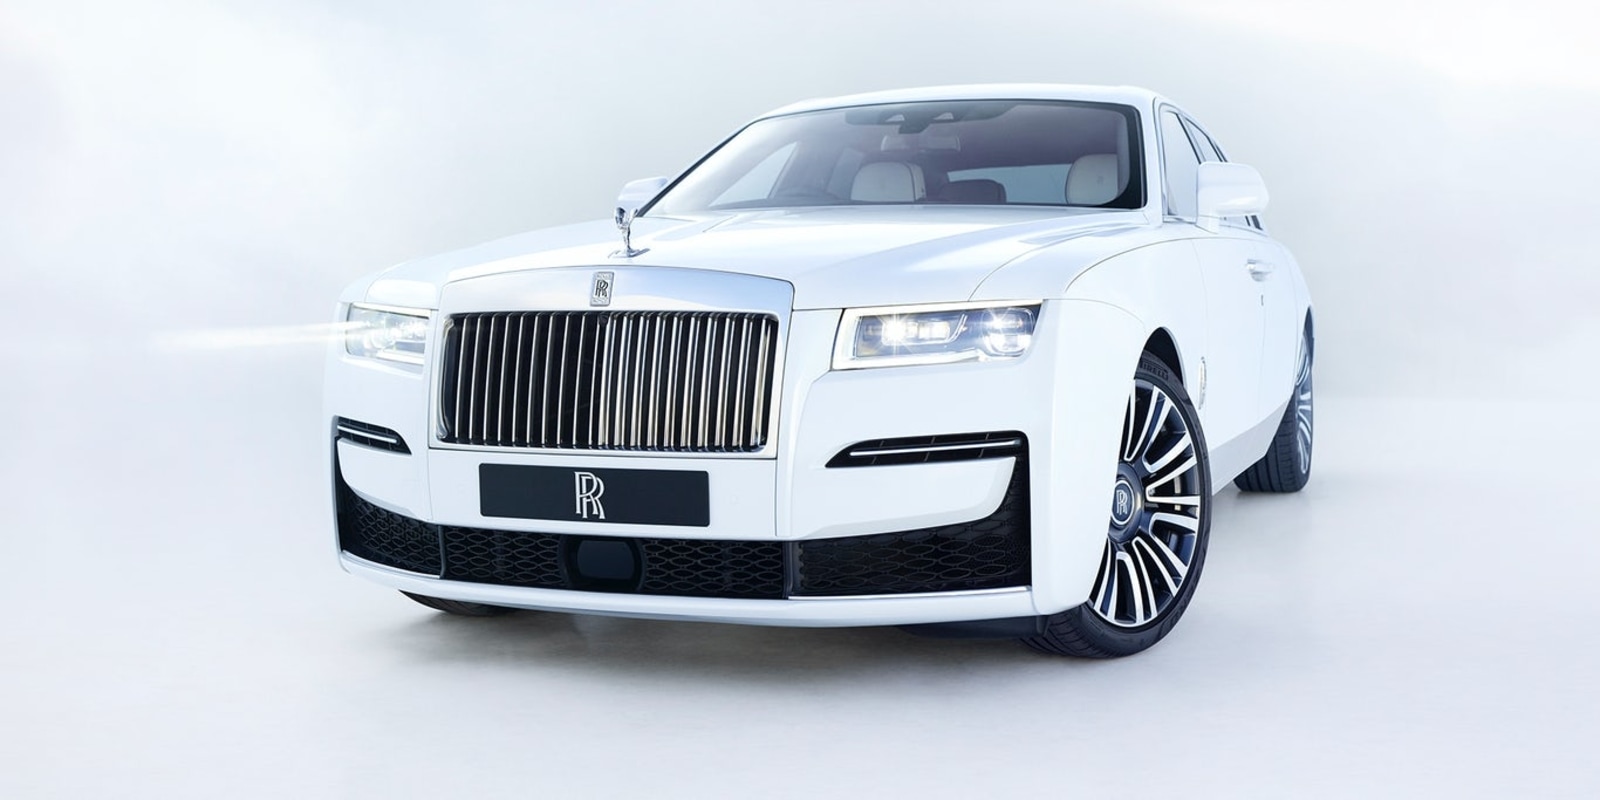 Dilip Shanghvi Rolls Royce